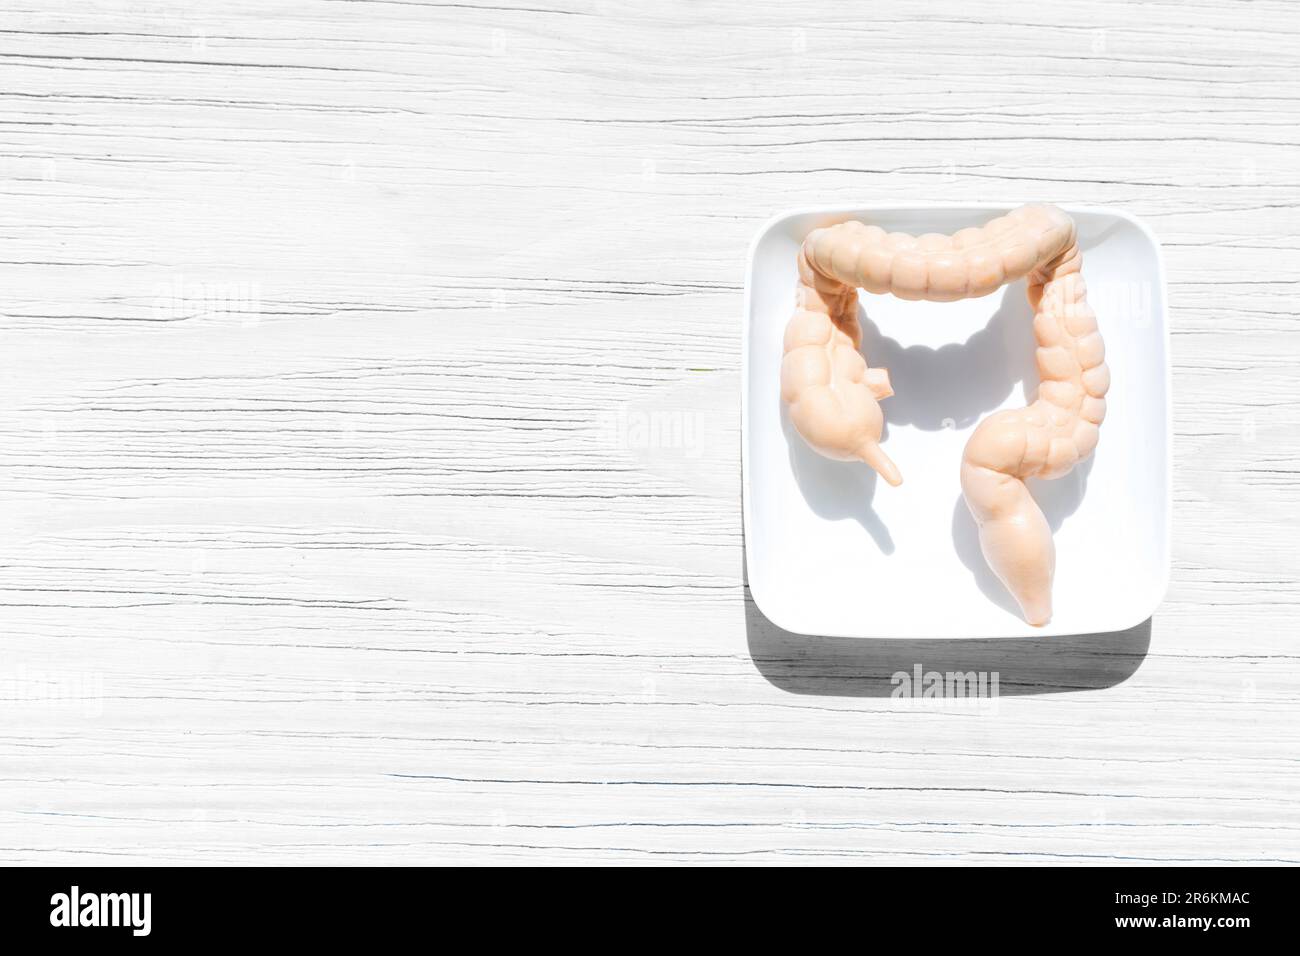 Copia giocattolo dell'intestino umano posta su un vassoio bianco, su uno sfondo di legno bianco. Contesto per presentazioni mediche, materiali didattici Foto Stock